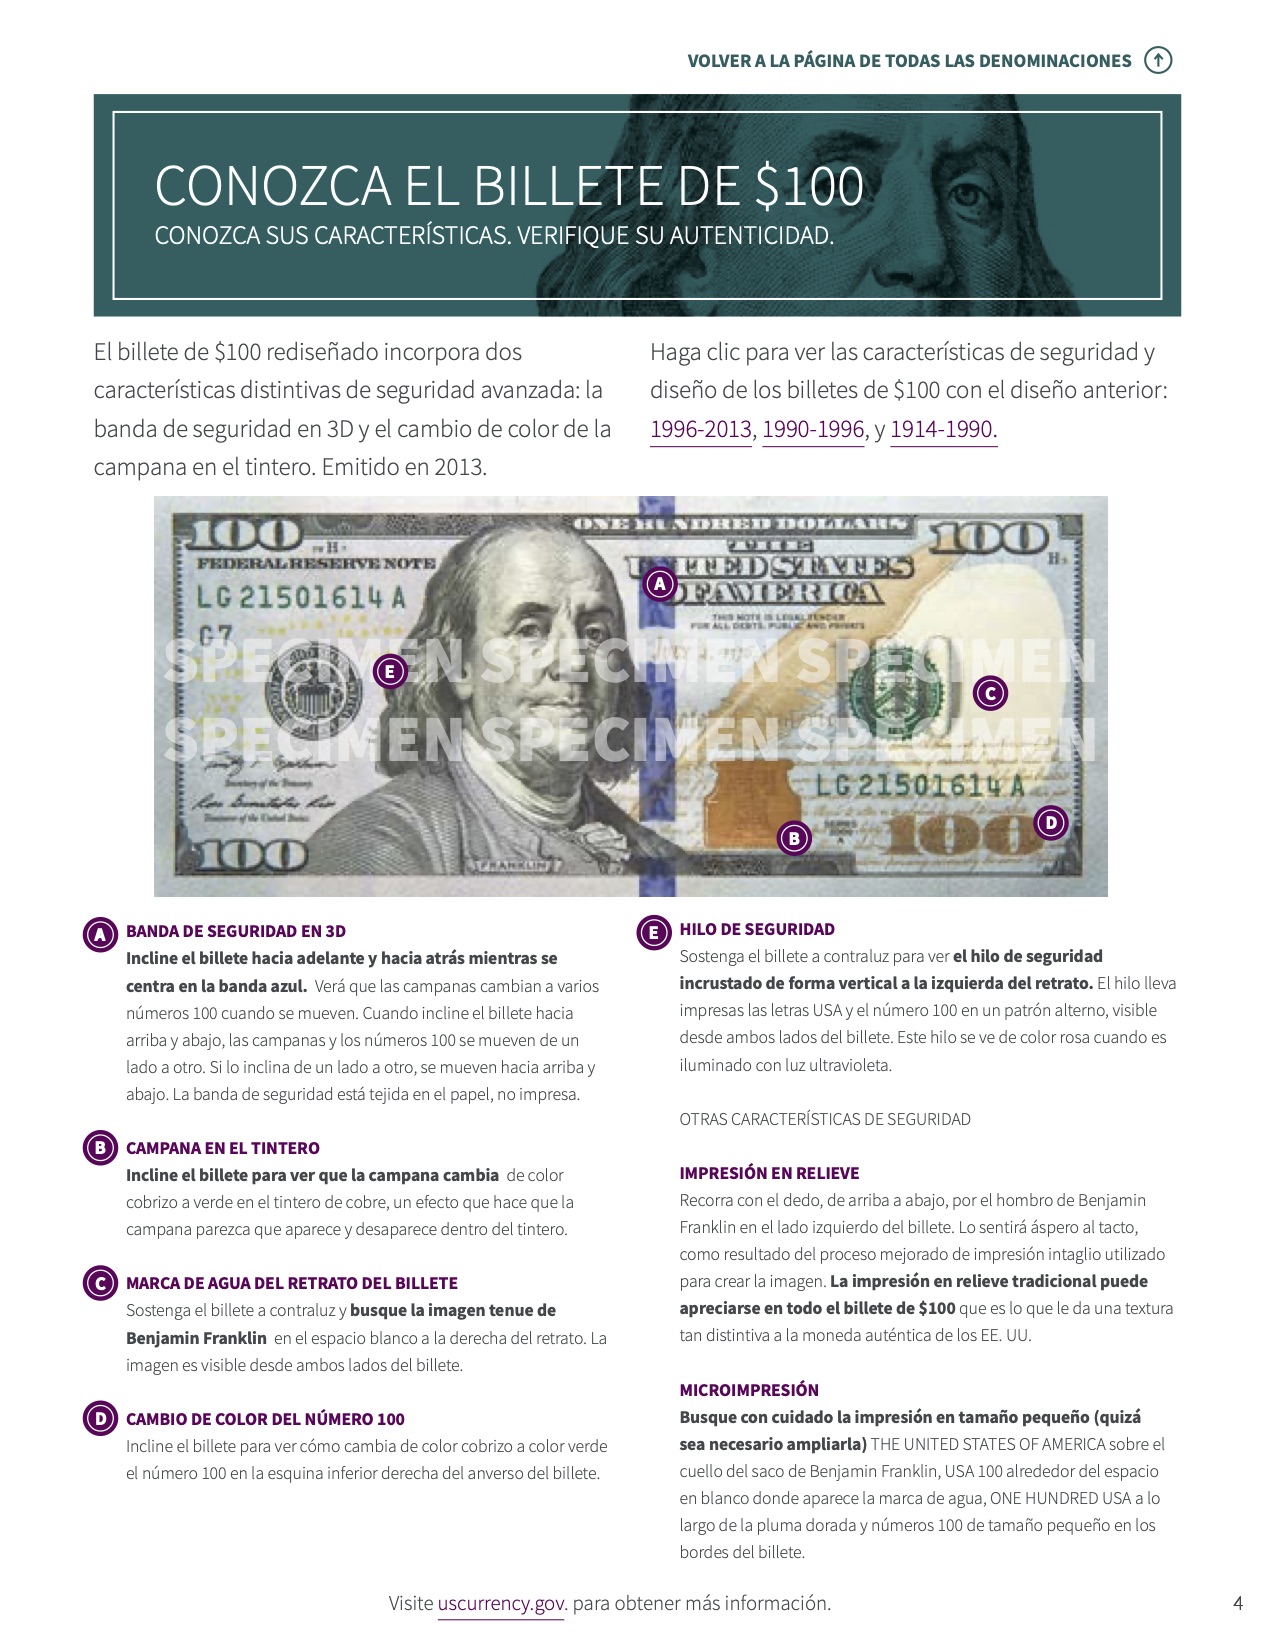 Una imagen de la página 'Conozca el billete de $100' en la Caja De Herramientas para Cajeros que detalla varias características de seguridad y diseño de los billetes de $100 de la Reserva Federal